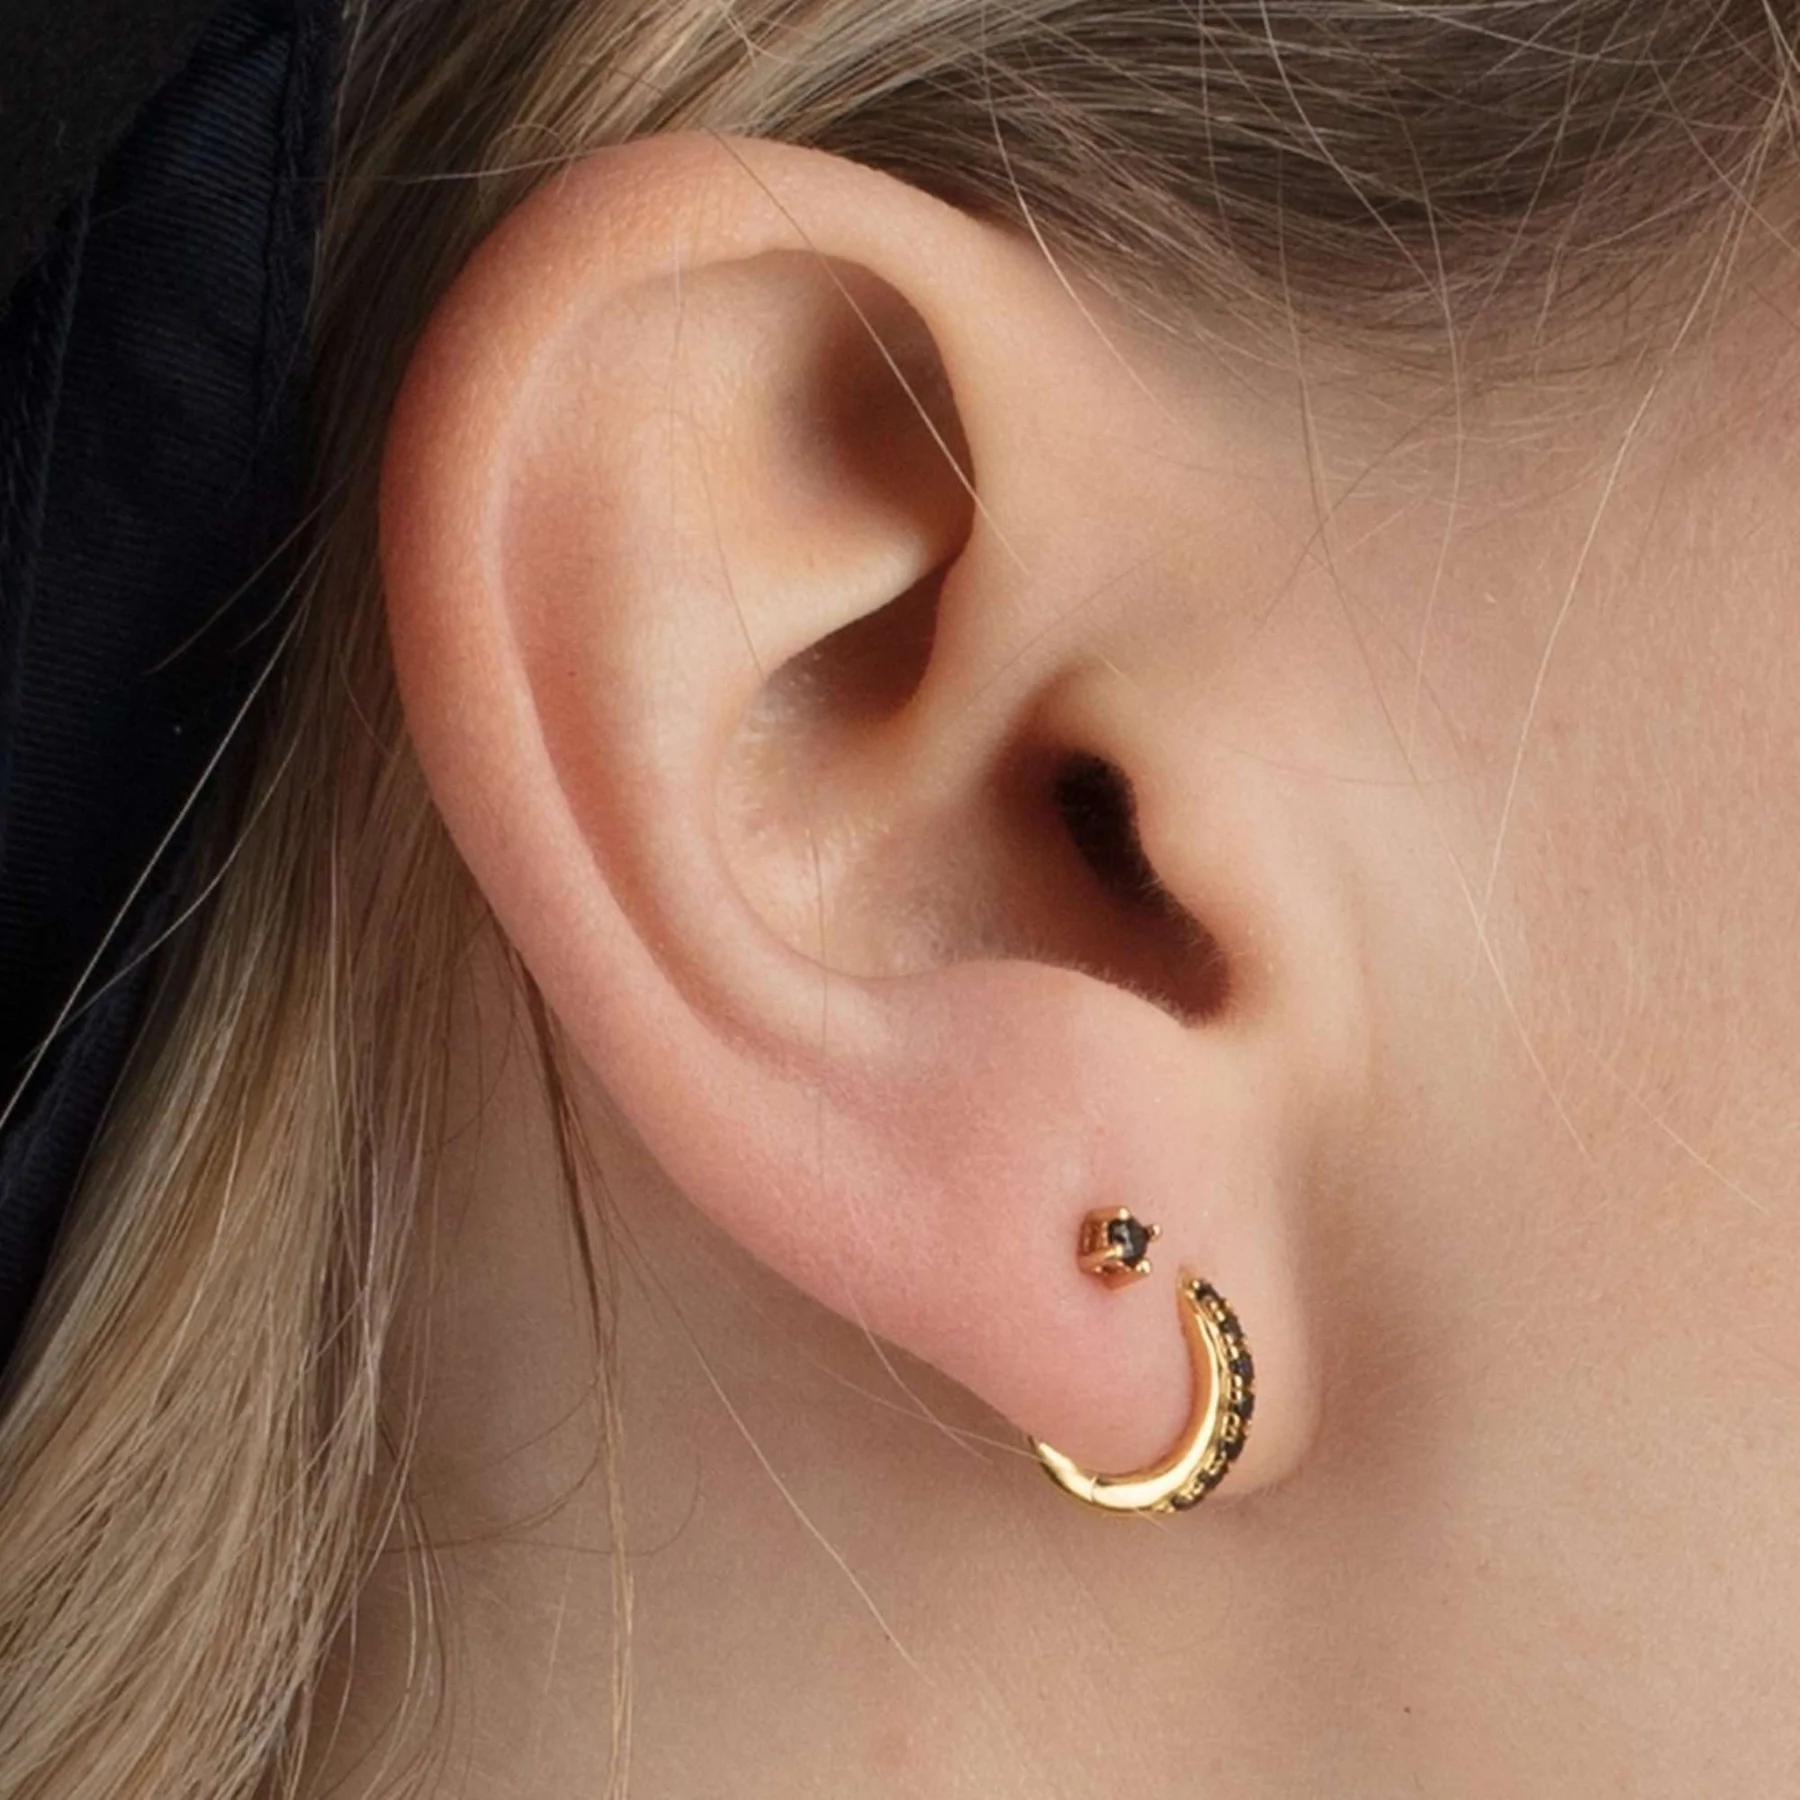 earrings-teeny-tiny-stud-earrings-2_1800x1800